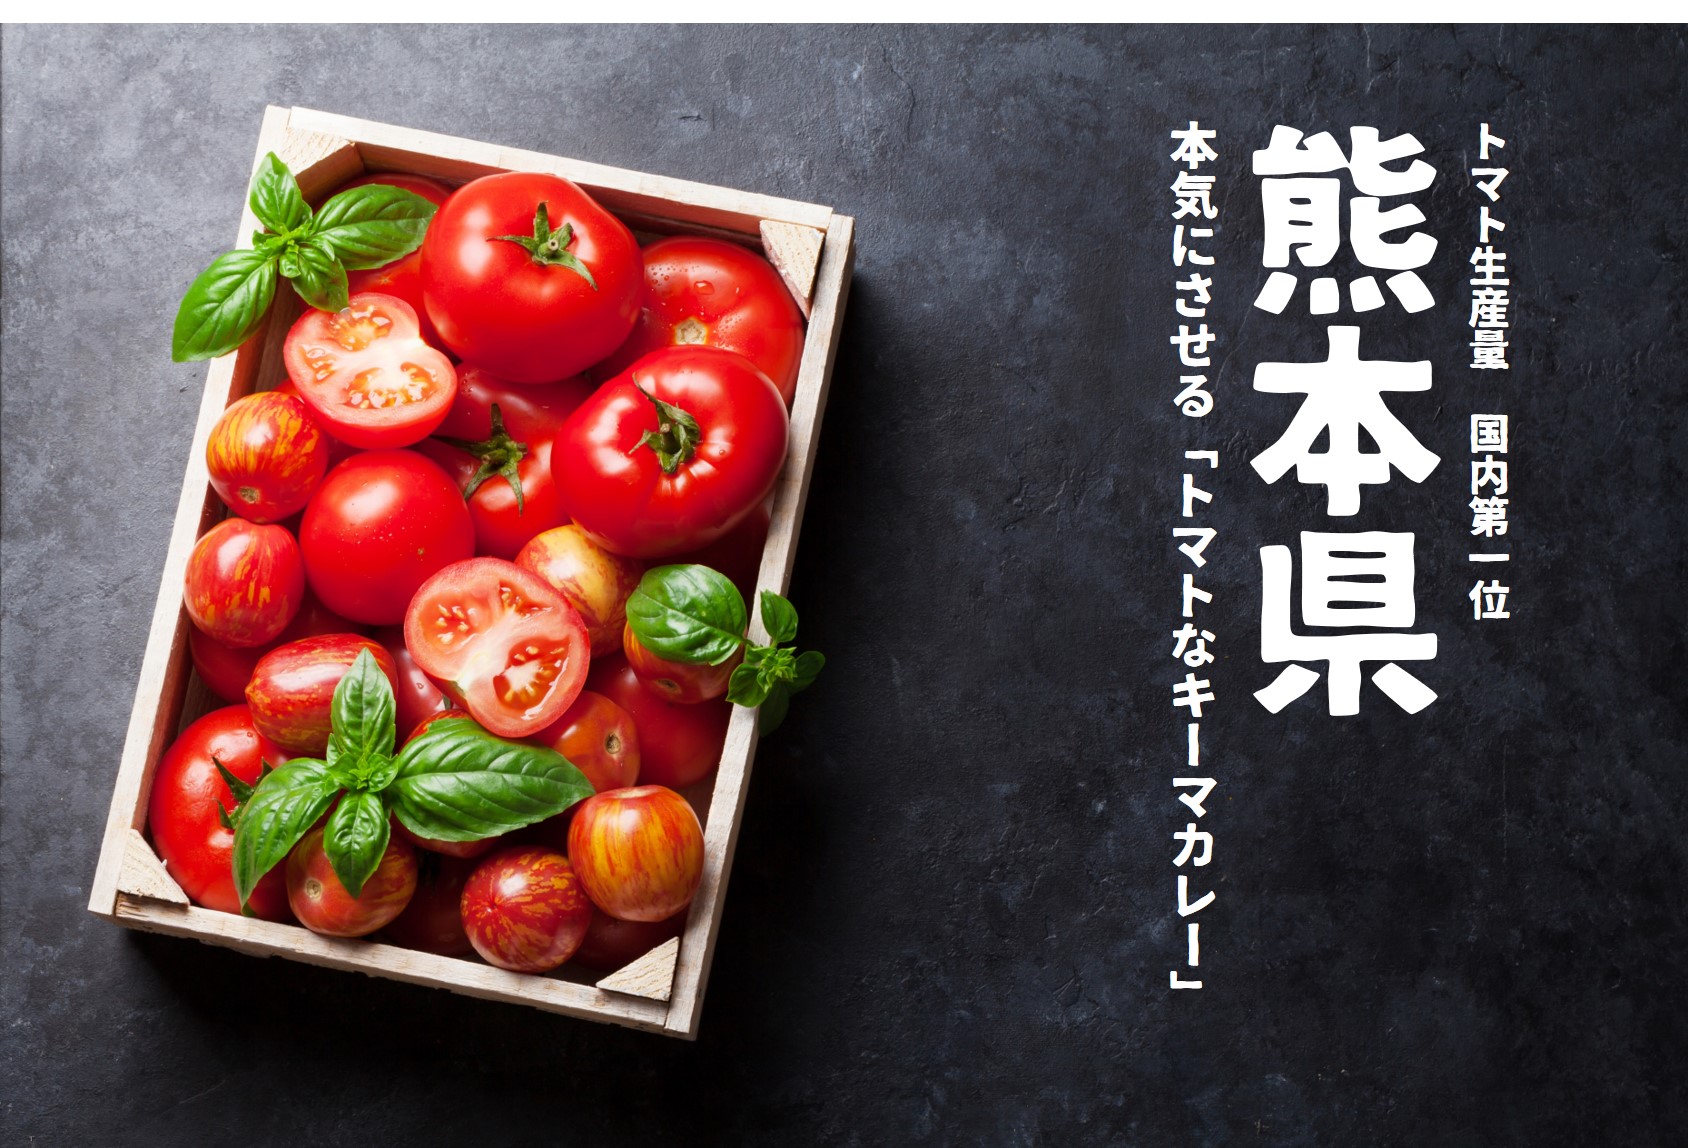 【Review】トマトと言えば熊本。意地こそ感じられた万能カレーソース!?